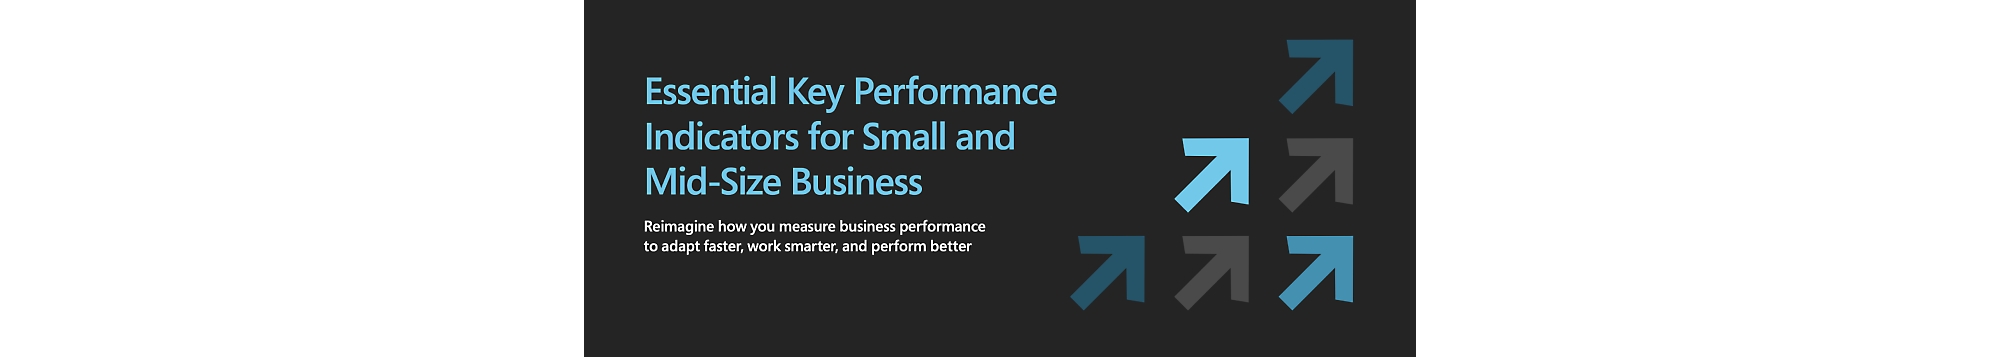 Indicatori di prestazioni chiave essenziali per piccole e medie imprese.